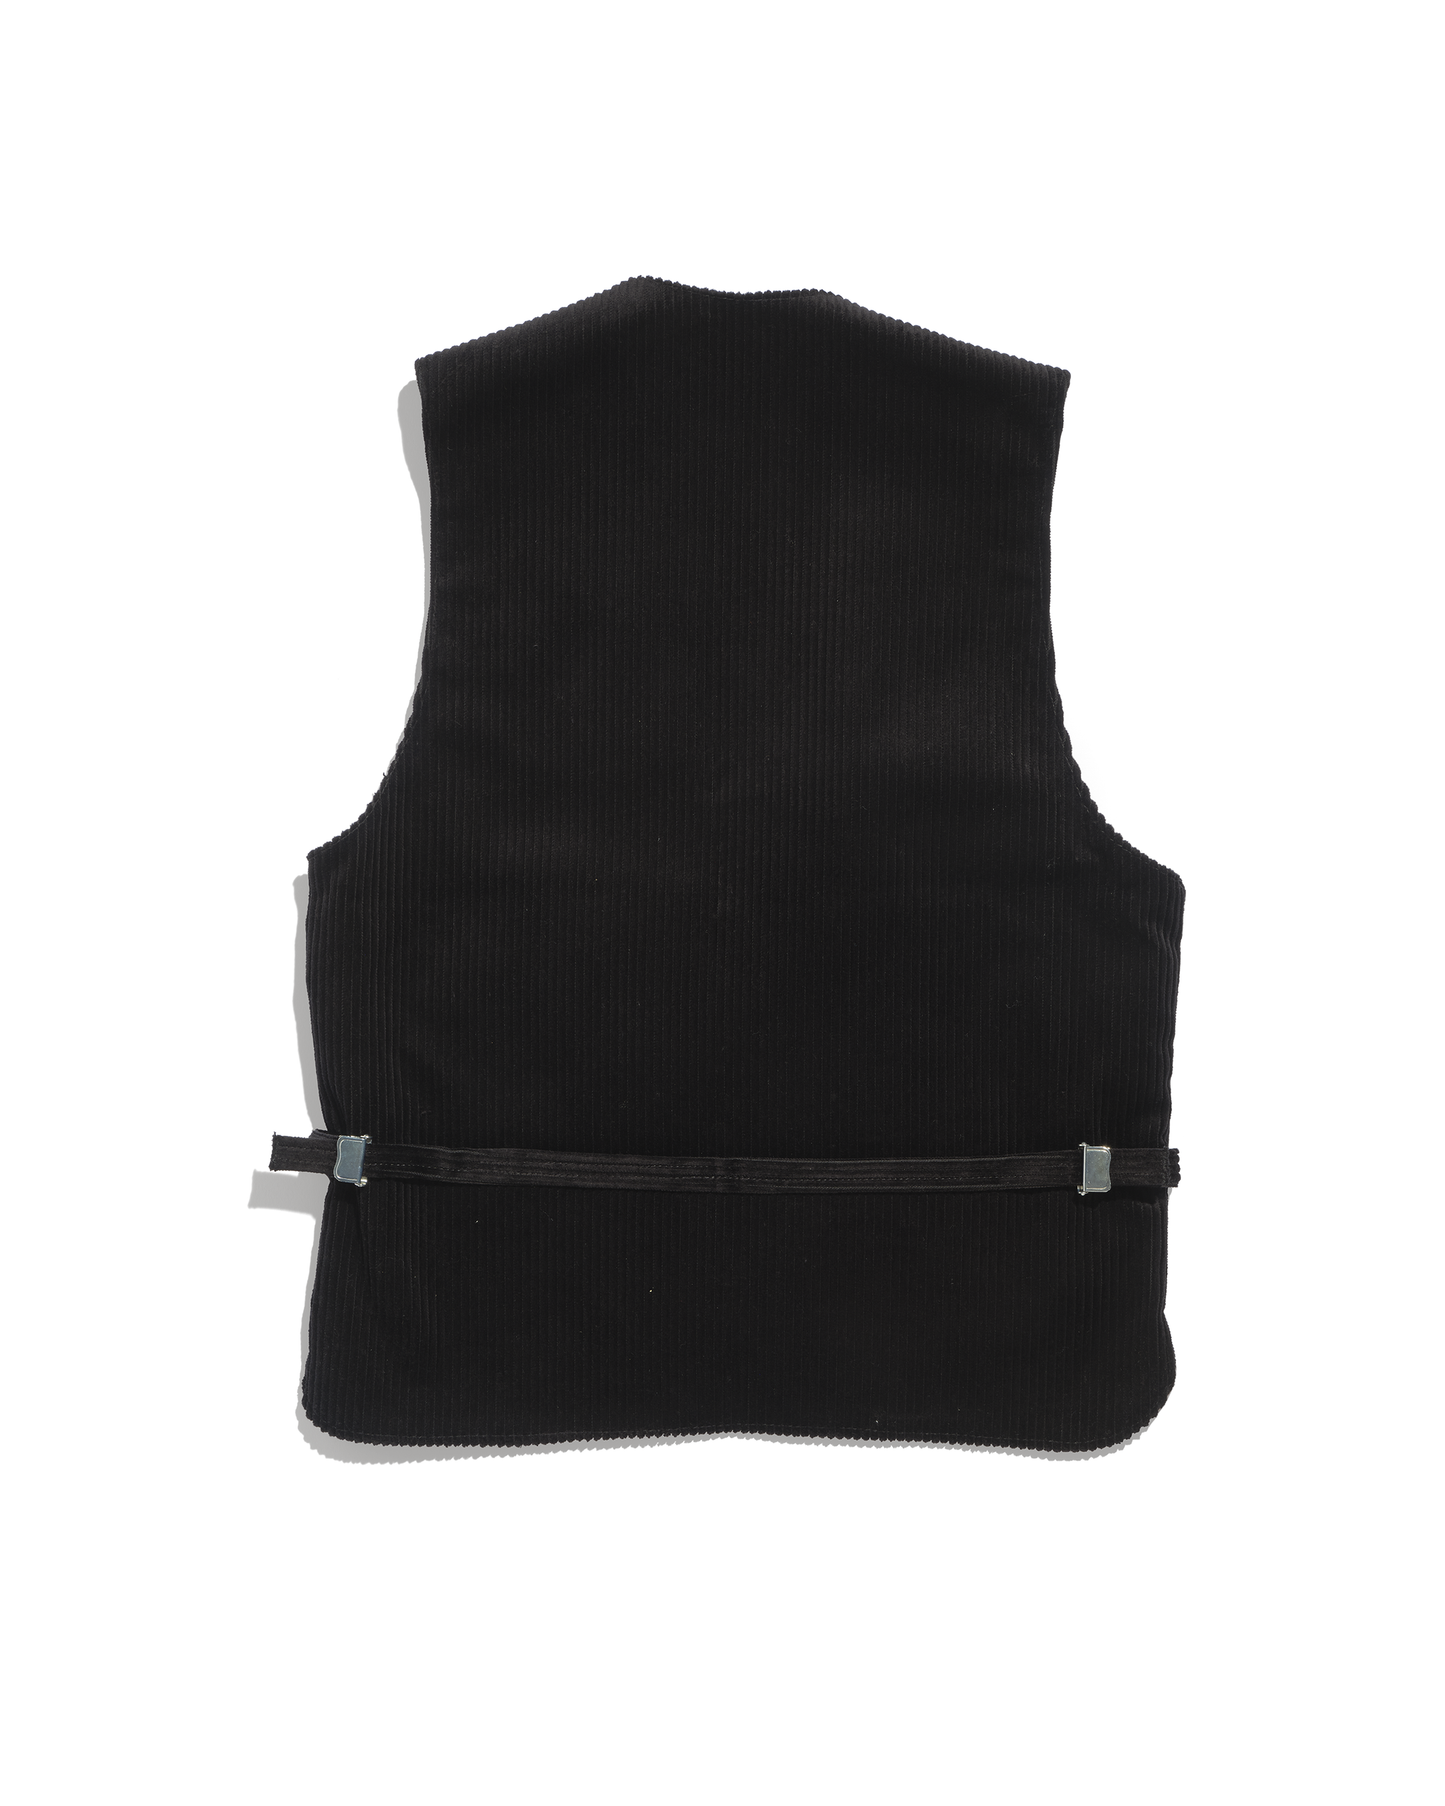 German black rush velvet corporate vest